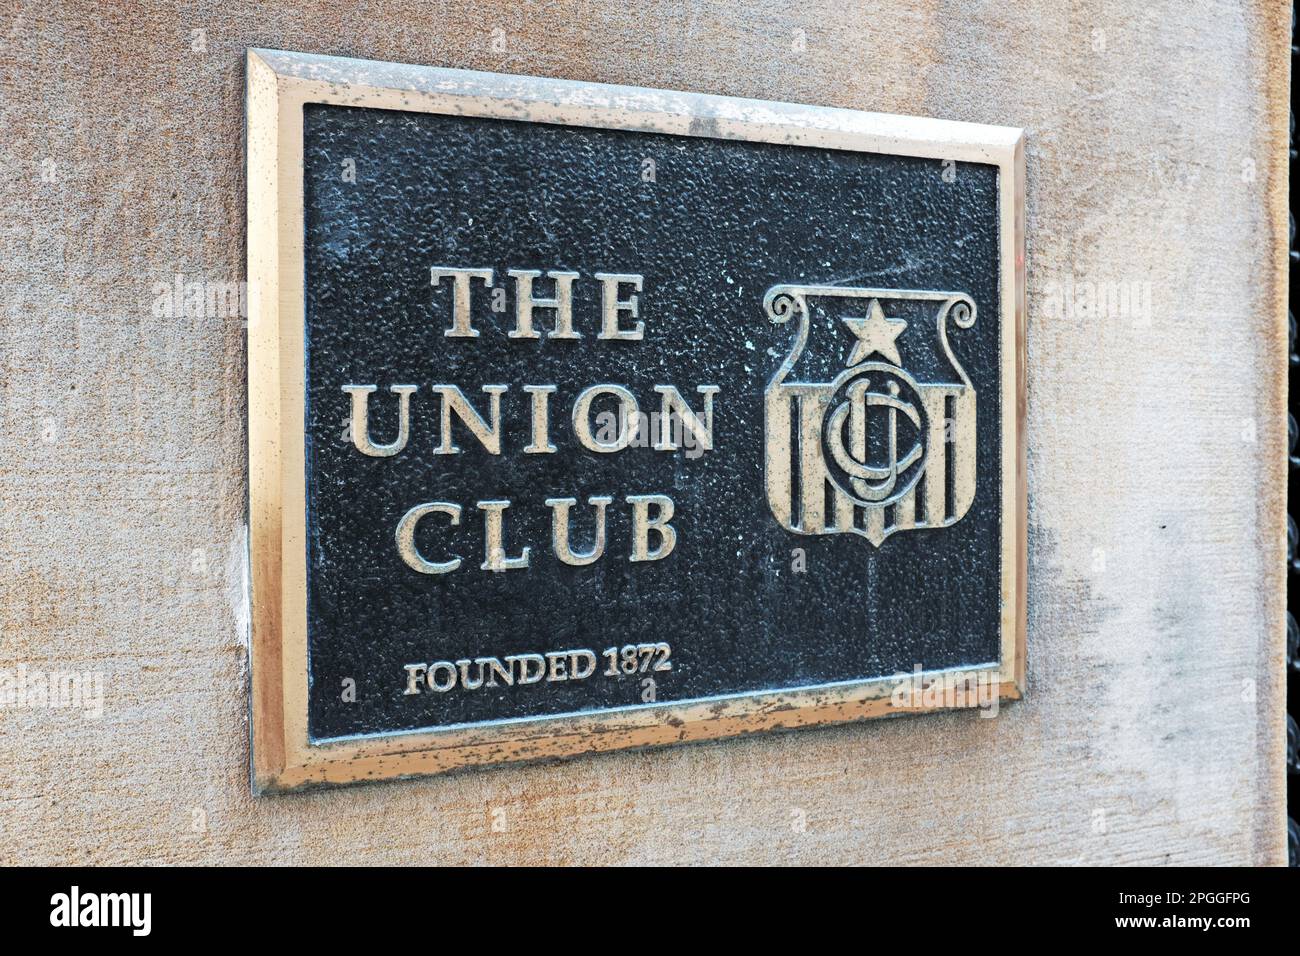 Le Cleveland Union Club, un club social privé constitué en 1872, au coin d'Euclid et East 12th dans le centre-ville de Cleveland, Ohio, États-Unis. Banque D'Images